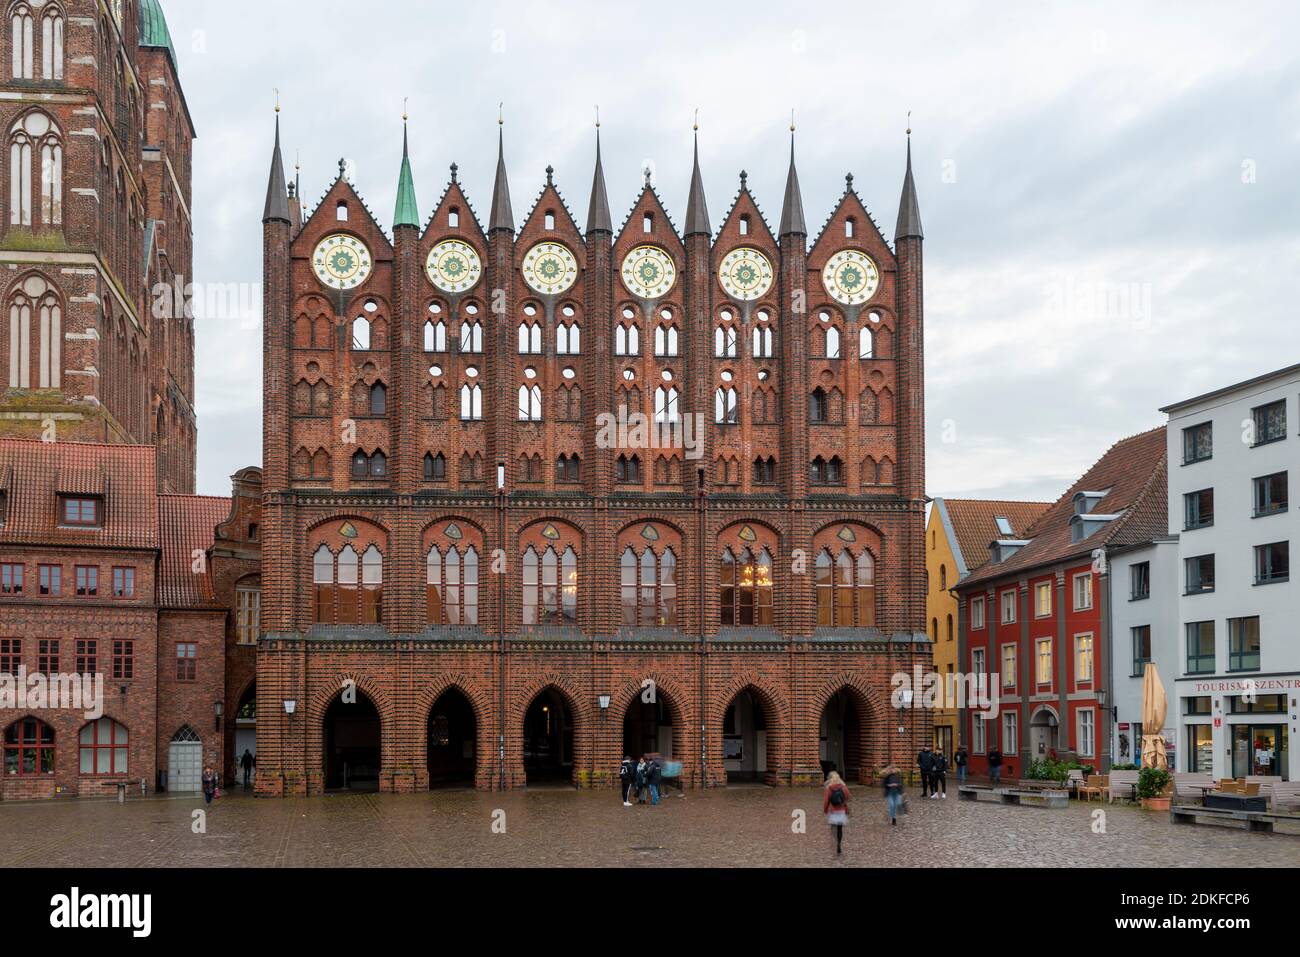 Alemania, Mecklemburgo-Pomerania Occidental, Stralsund, ayuntamiento histórico, mercado antiguo, ciudad hanseática de Stralsund Foto de stock